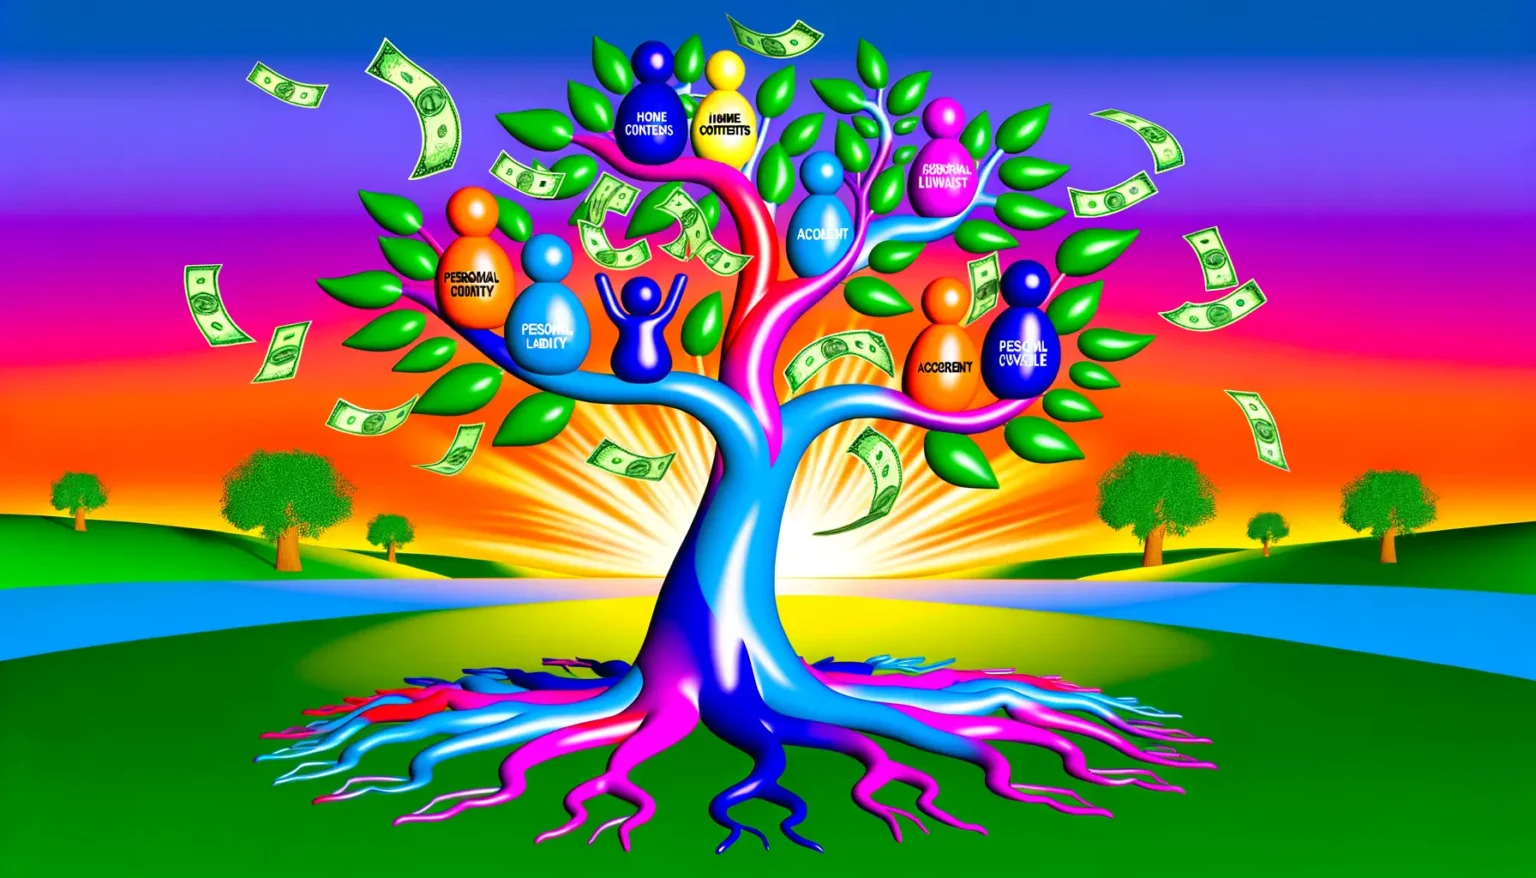 Ein lebhaftes und farbenfrohes Bild, das einen stilisierten Baum darstellt, dessen Blätter aus Dollar-Geldscheinen bestehen und dessen Früchte bunte Kugeln mit Texten wie "PERSONALITY", "INCOME", "ACCOMPLISHMENT" sind. Die Baumkrone ist gegen einen Himmel mit einem Farbverlauf von lila zu orange gesetzt, und der Baum steht in einer abstrakten Landschaft mit grünem Gras und blauem Wasser. Im Hintergrund sind kleinere Bäume und ein aufgehender oder untergehender Sonne zu sehen. Die Wurzeln des Baumes sind in bunten Farben gestaltet und scheinen lebendig und bewegt. Geldscheine "fliegen" oder "fallen" aus dem Baum in die umgebende Landschaft.